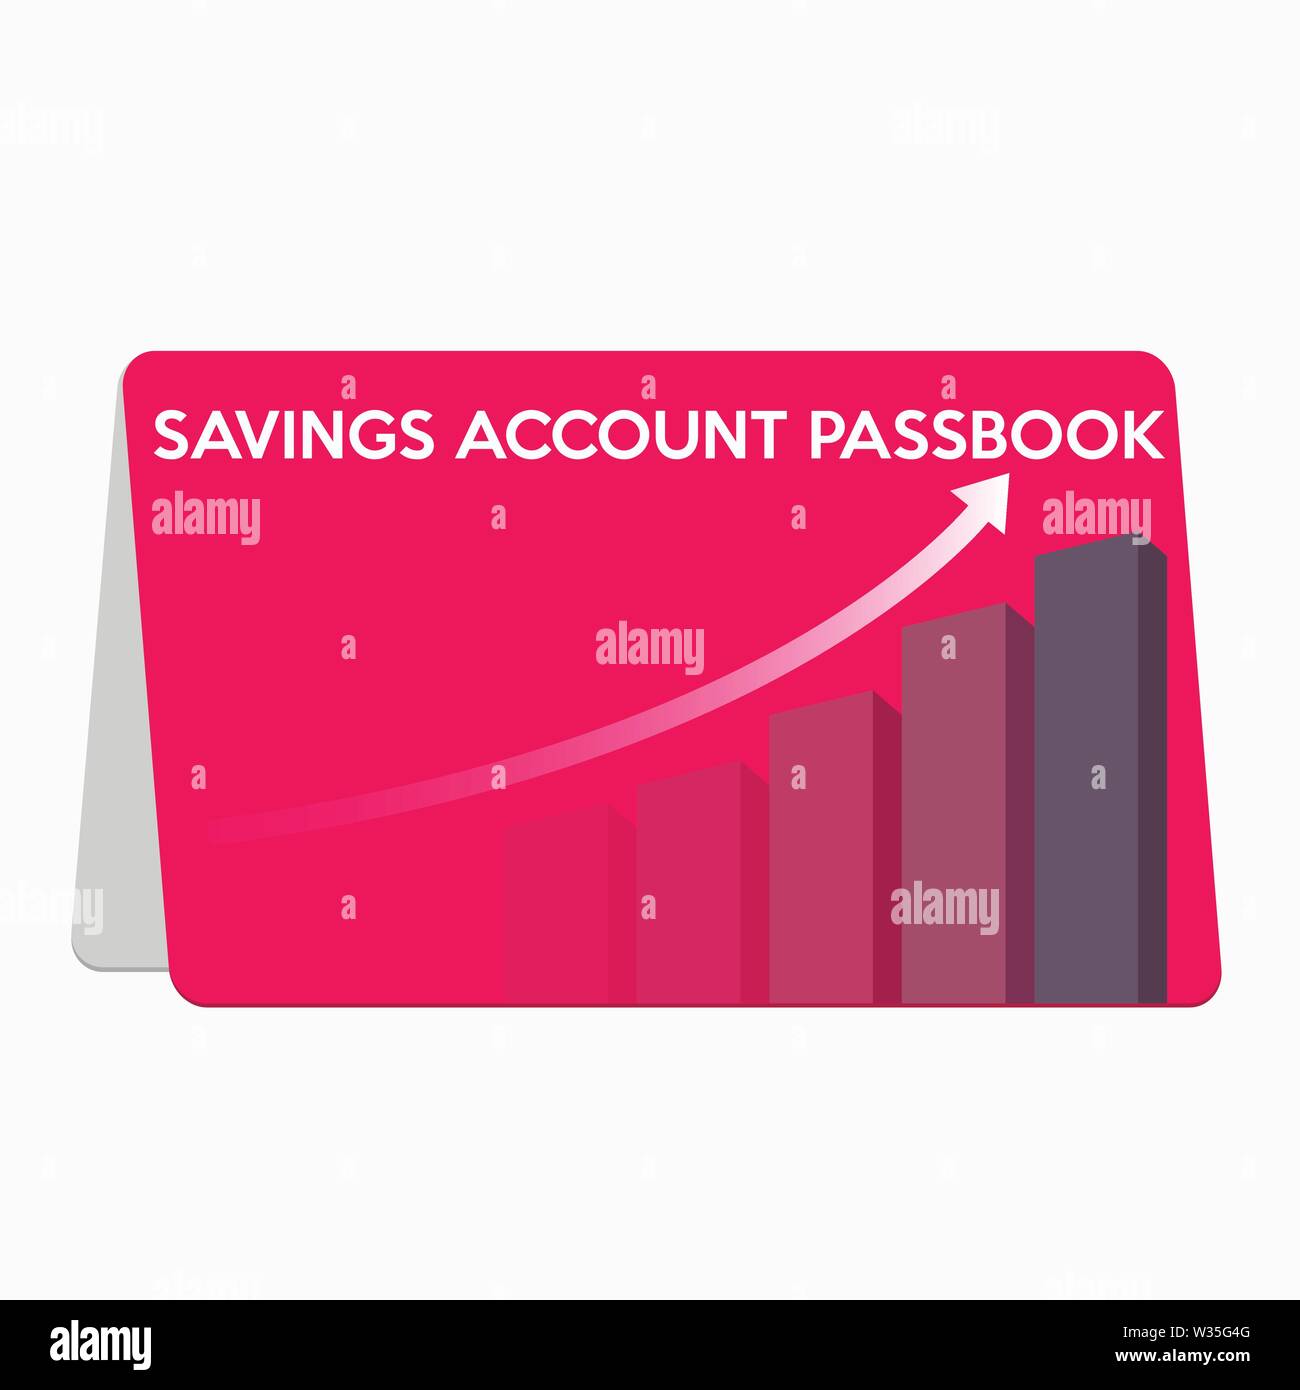 Saving account passbook flat design Stock Vector